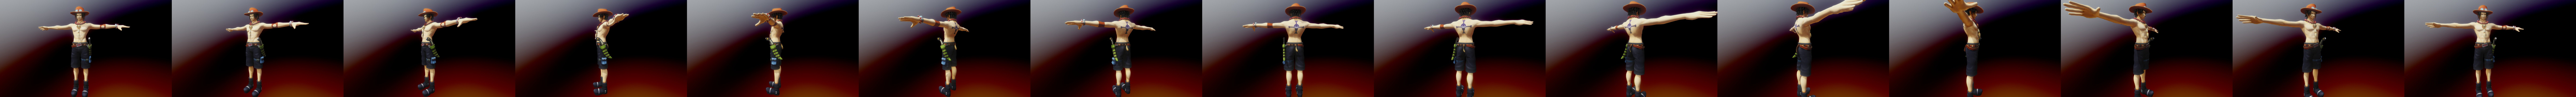 Portgas D. Ace 3D Hat!  Unity / Blender Ready : r/VRchat